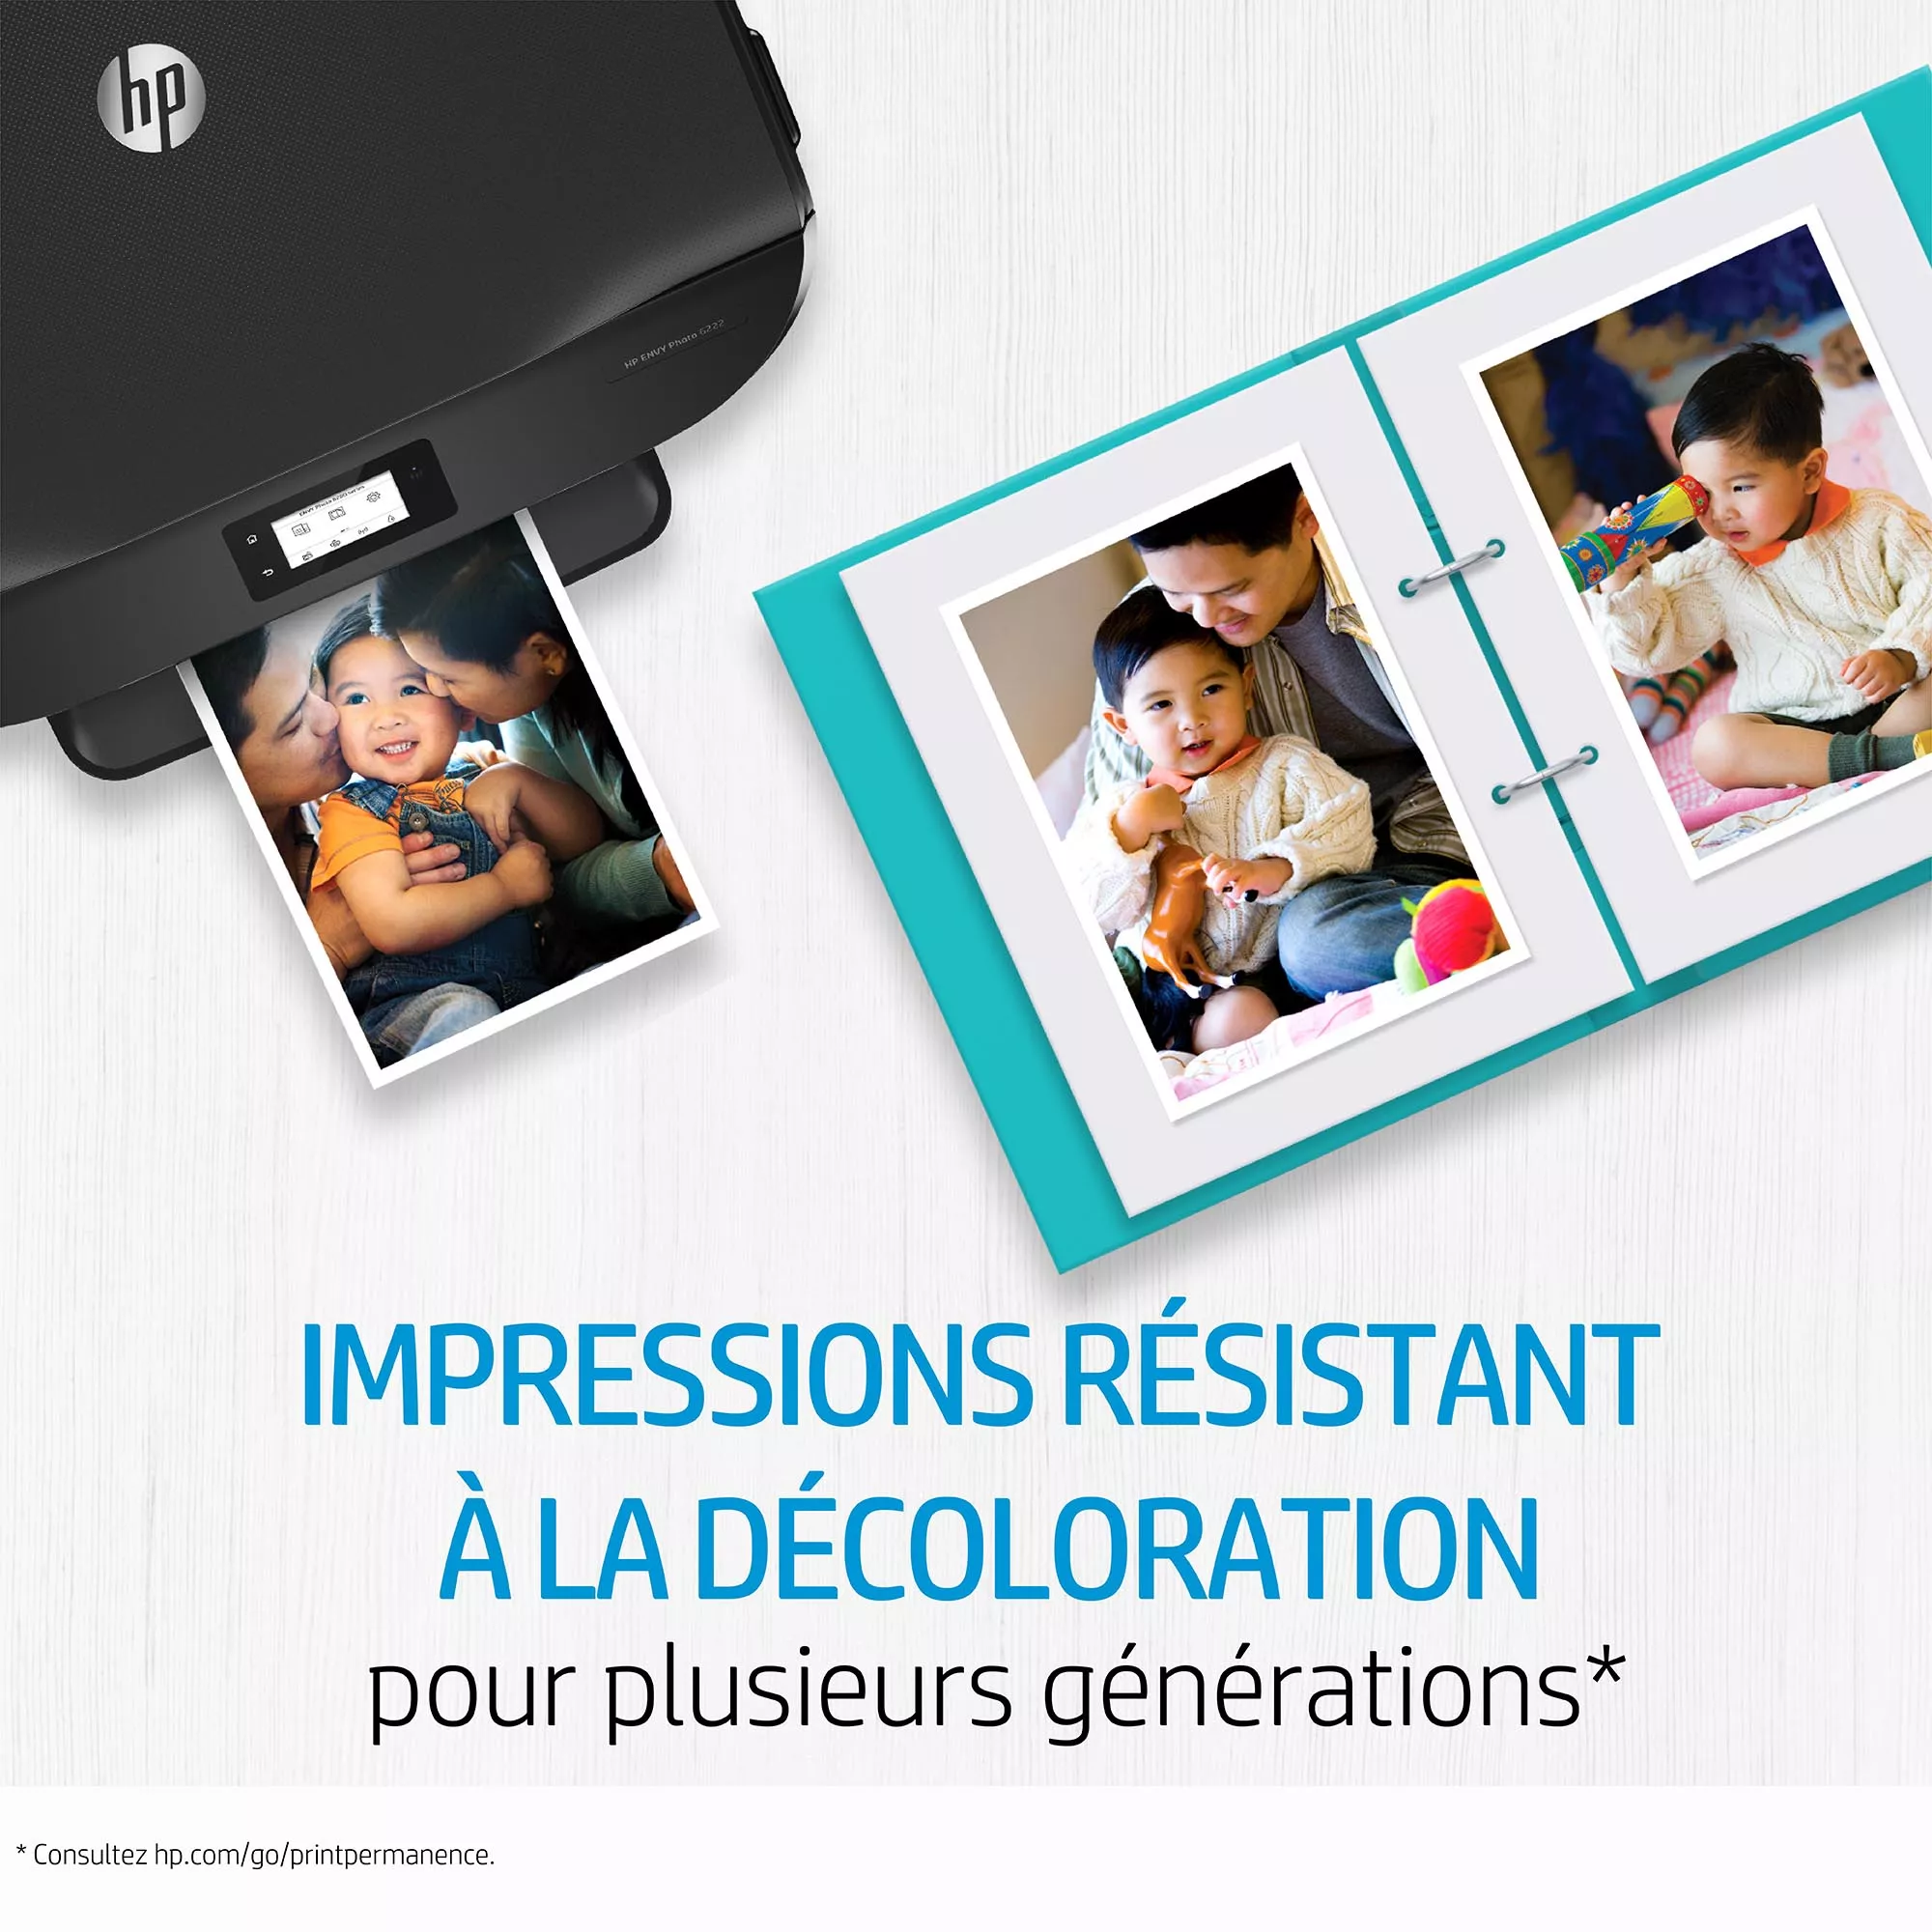 HP 303 Black Ink Cartridge HP - visuel 1 - hello RSE - L'union fait la force. De meilleurs résultats